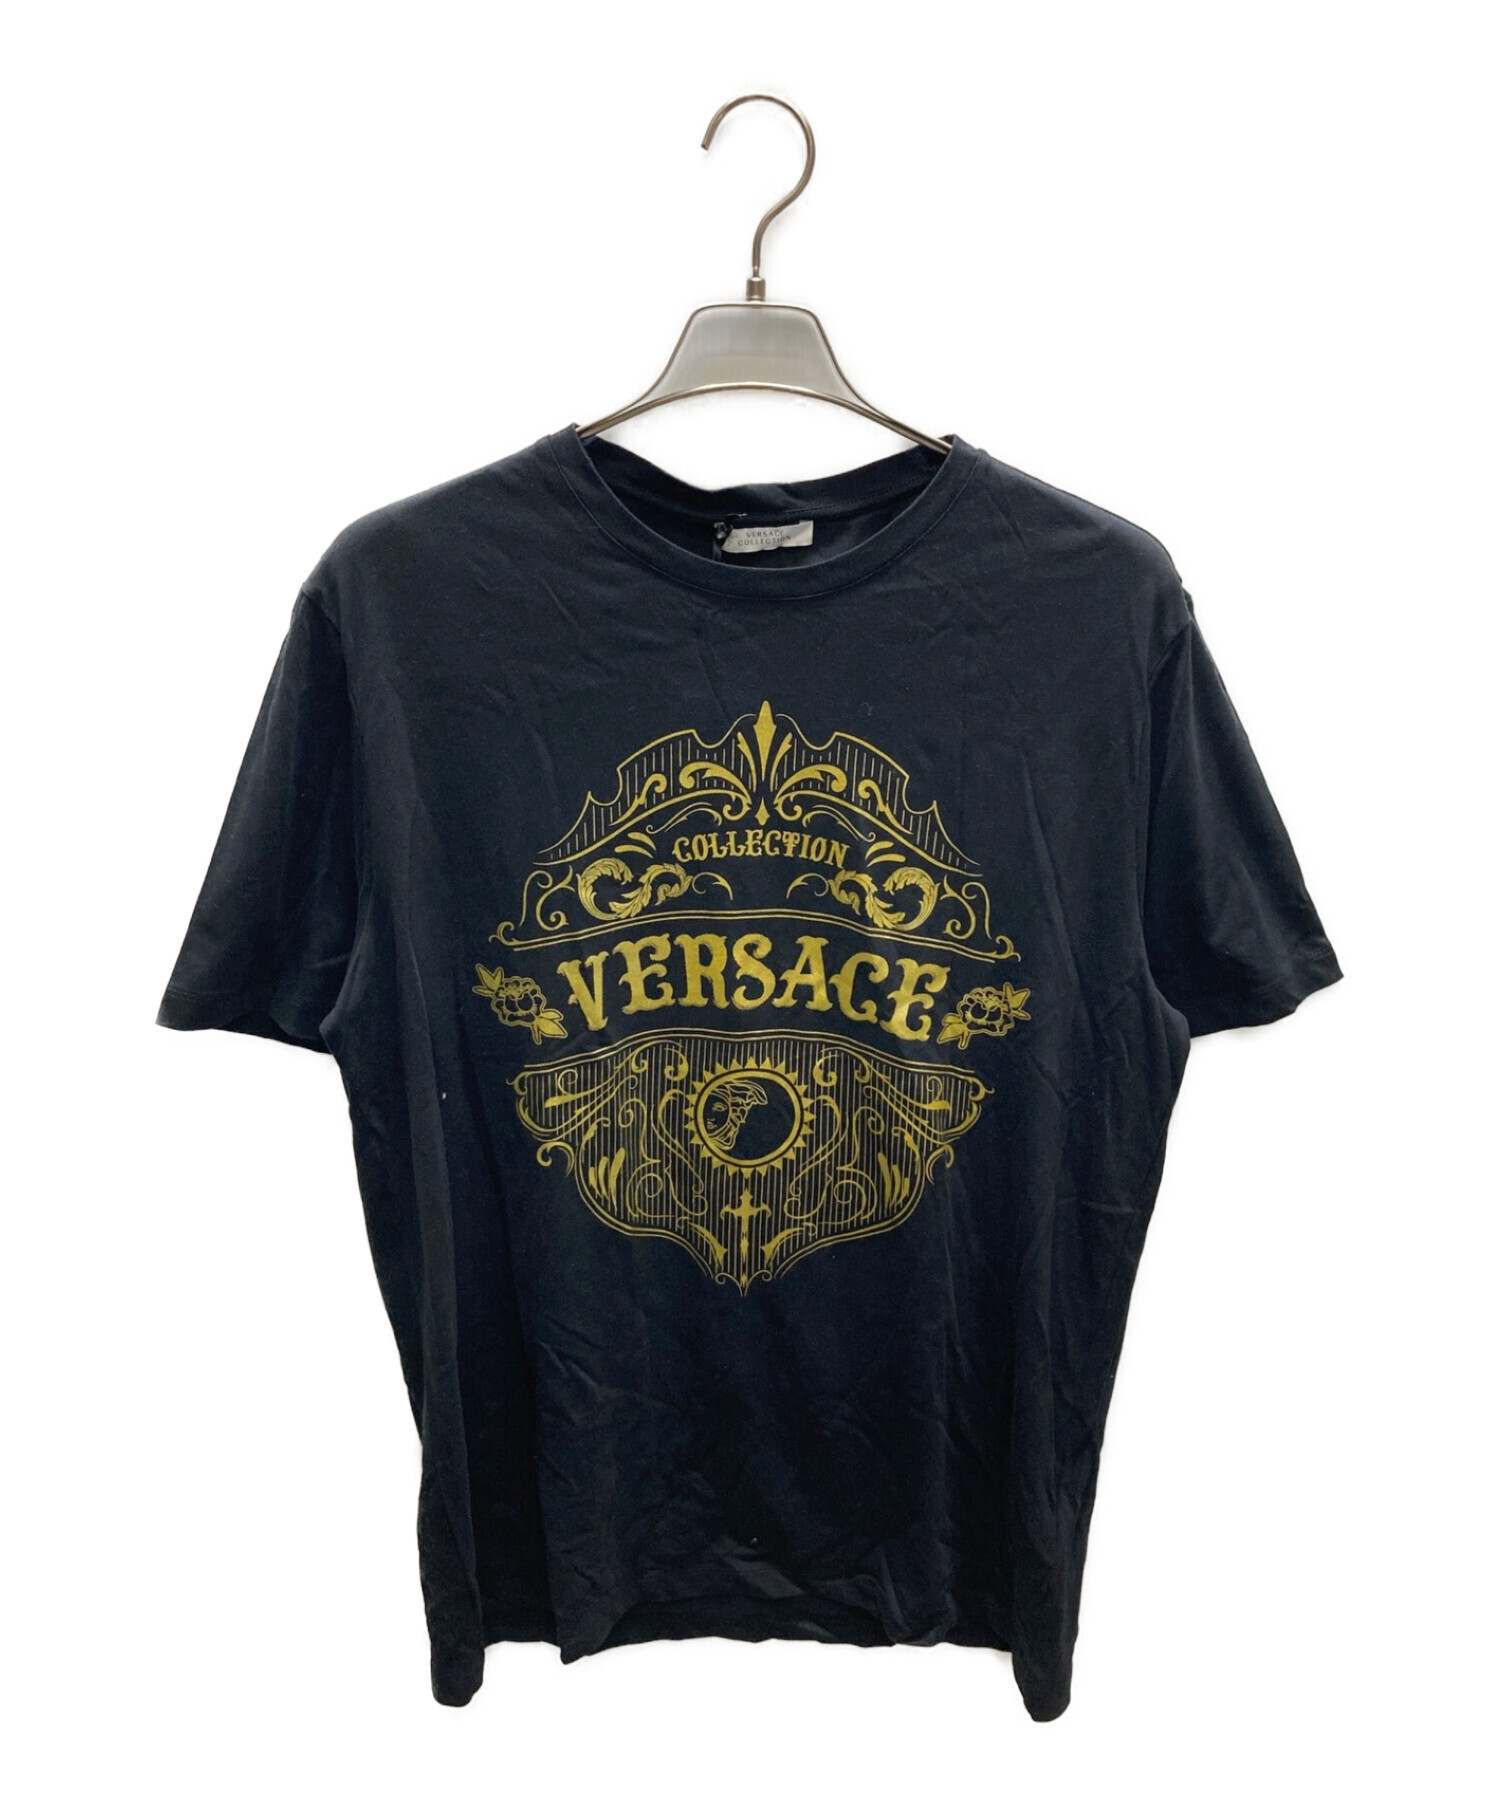 VERSACE ヴェルサーチェ ドラゴン刺繍 スパンコール Tシャツ XL 黒